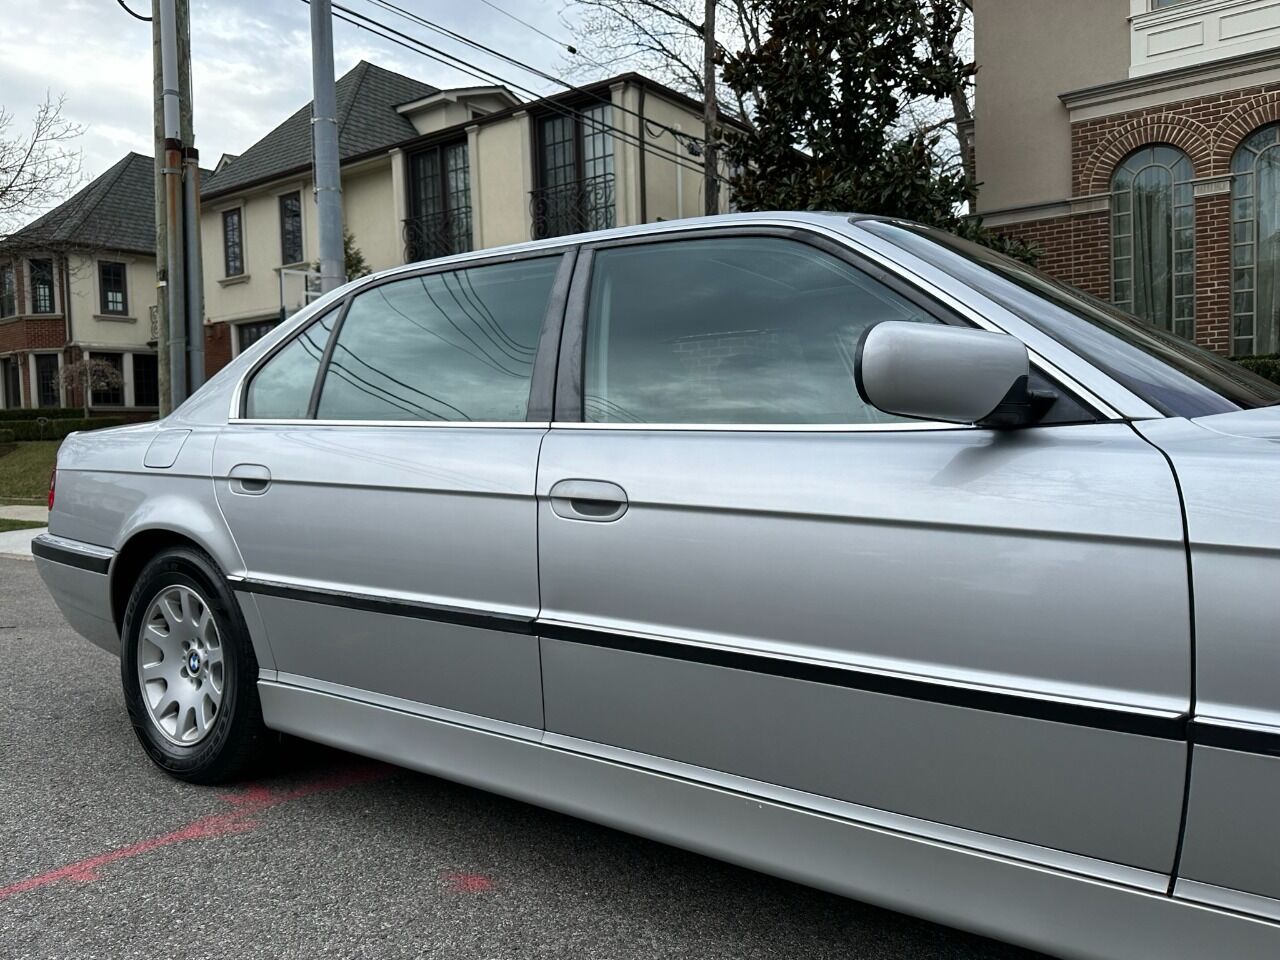 2001 BMW 7 Series Sedan - $8,900